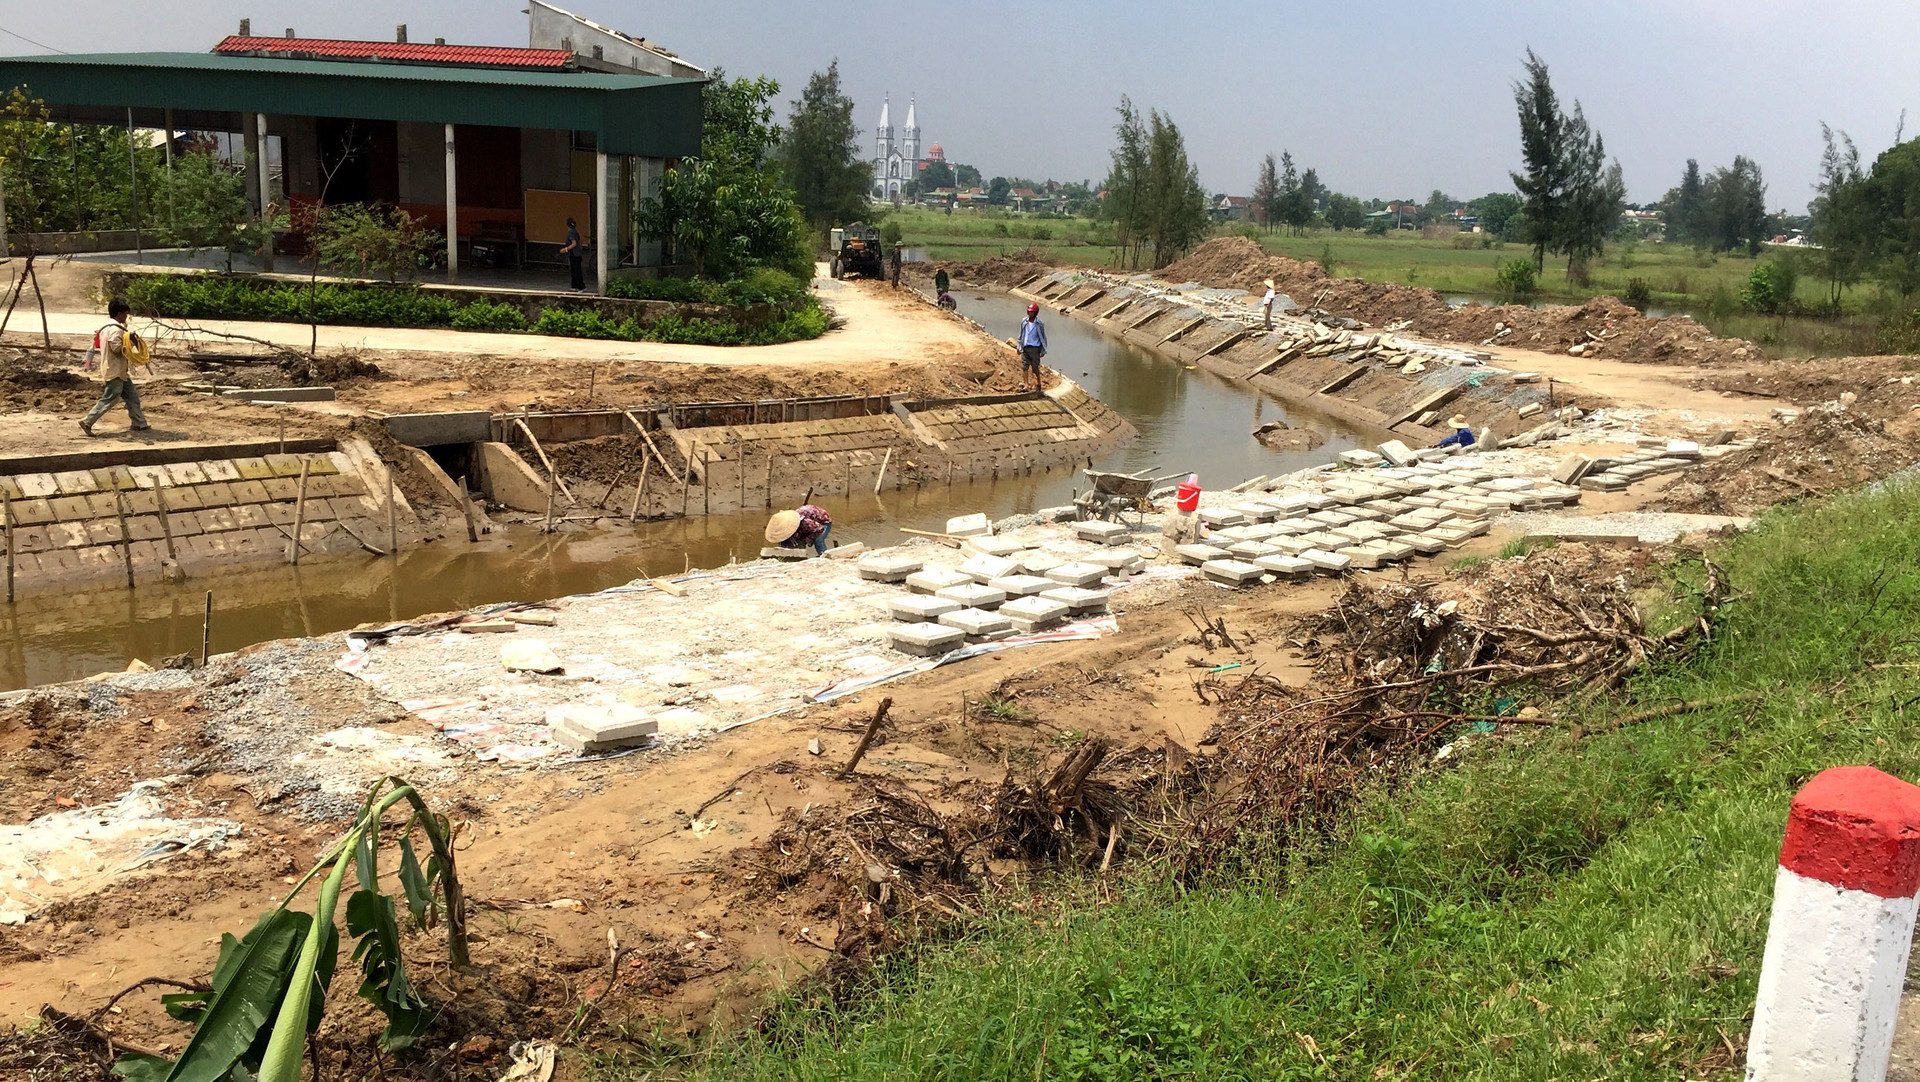 Huyện Lộc Hà, Hà Tĩnh: Thi công cẩu thả trên công trình hàng chục tỷ đồng